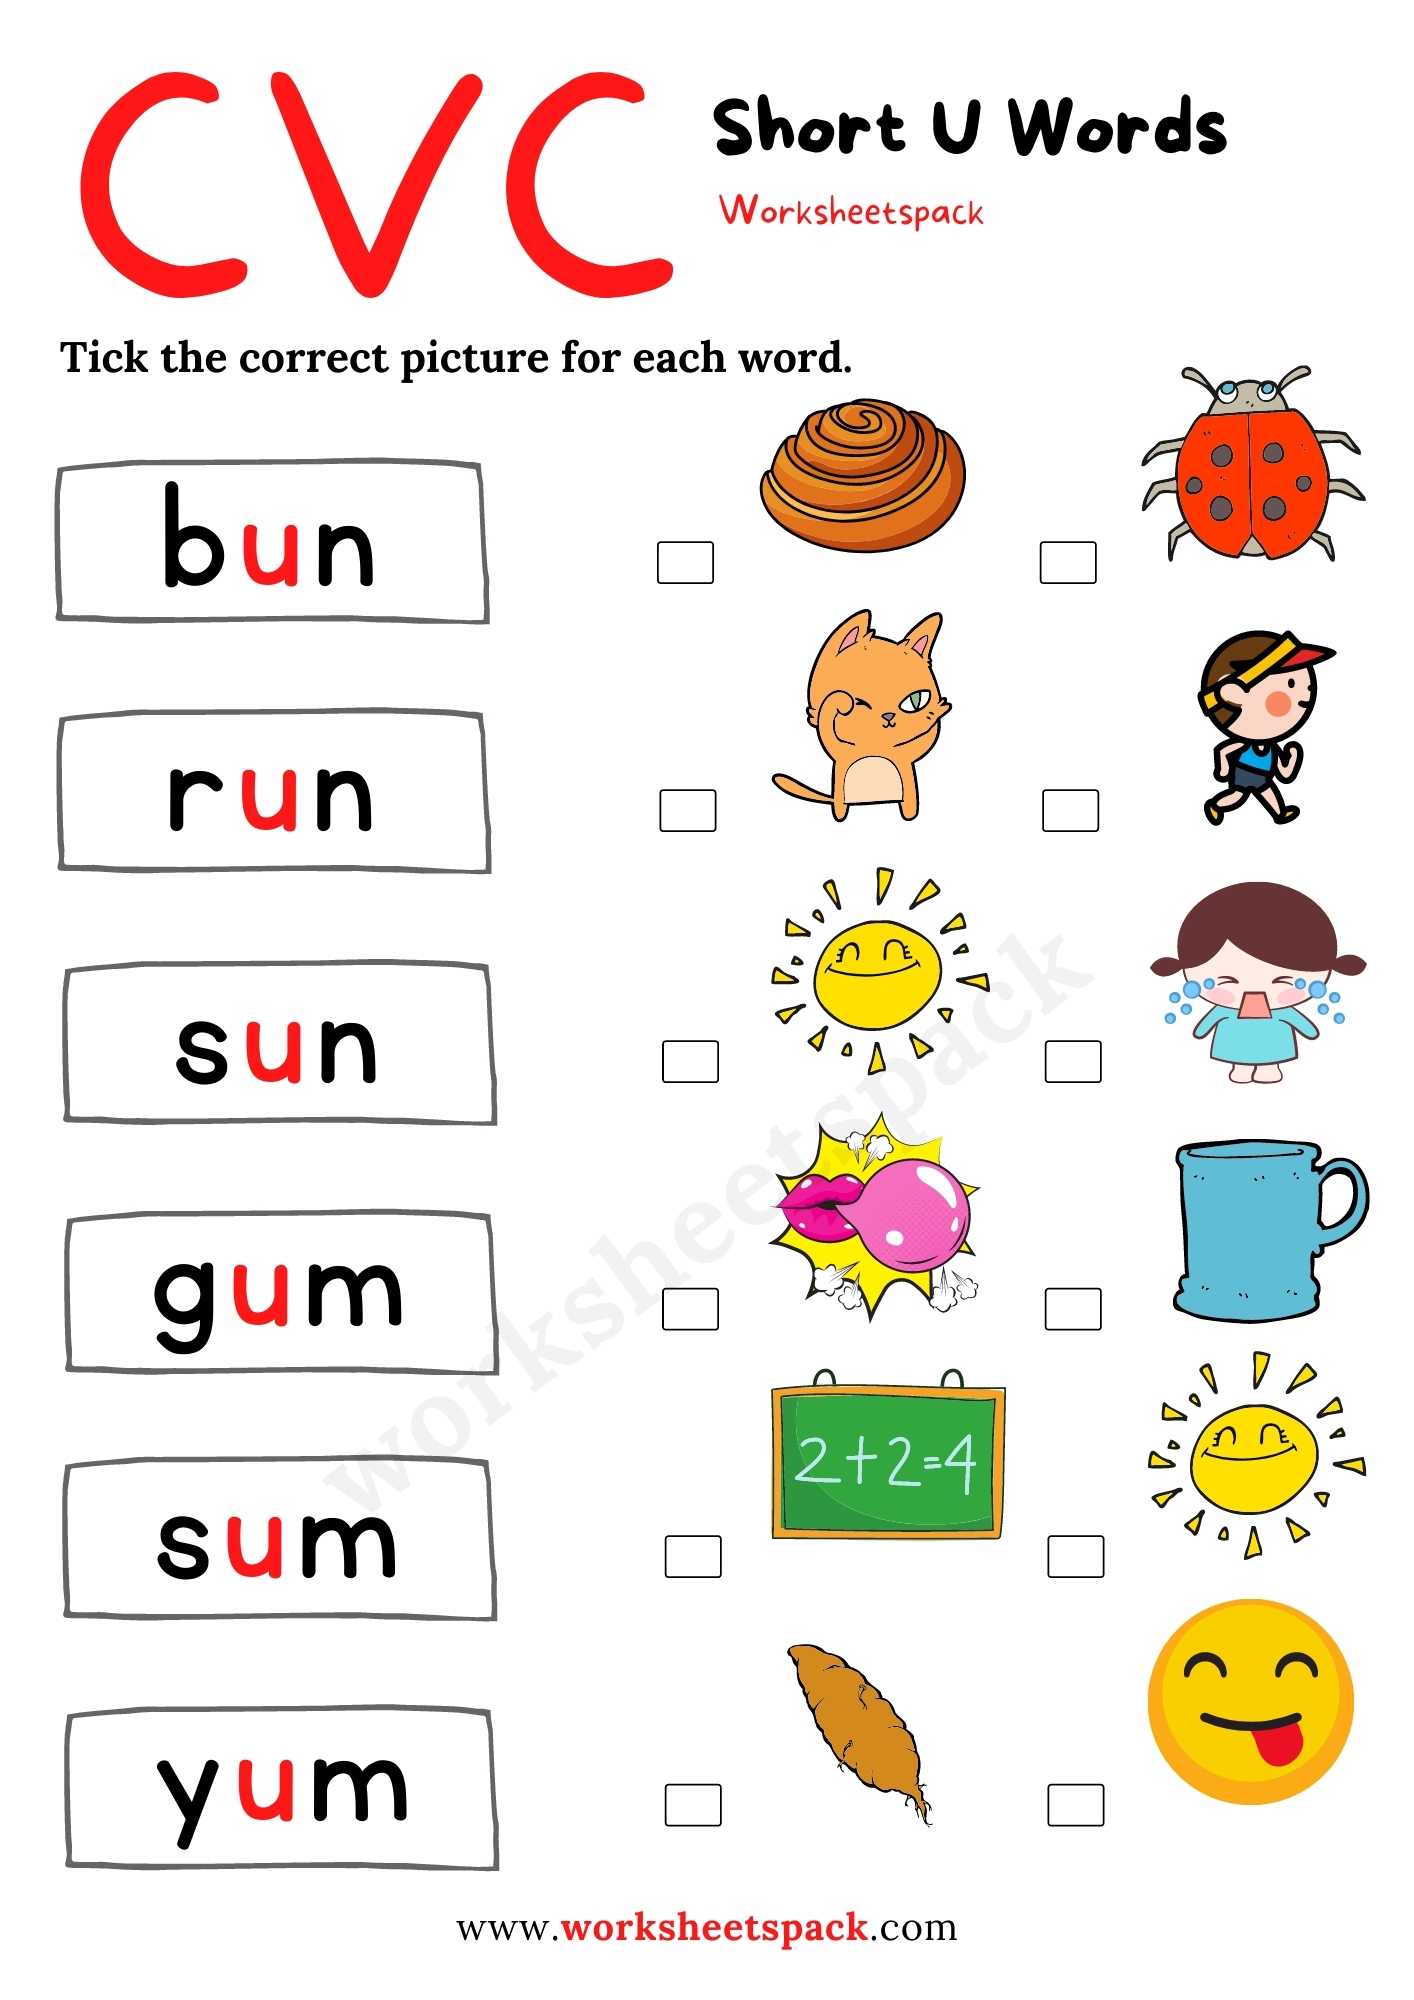 free-short-u-worksheets-for-kindergarten-worksheetspack